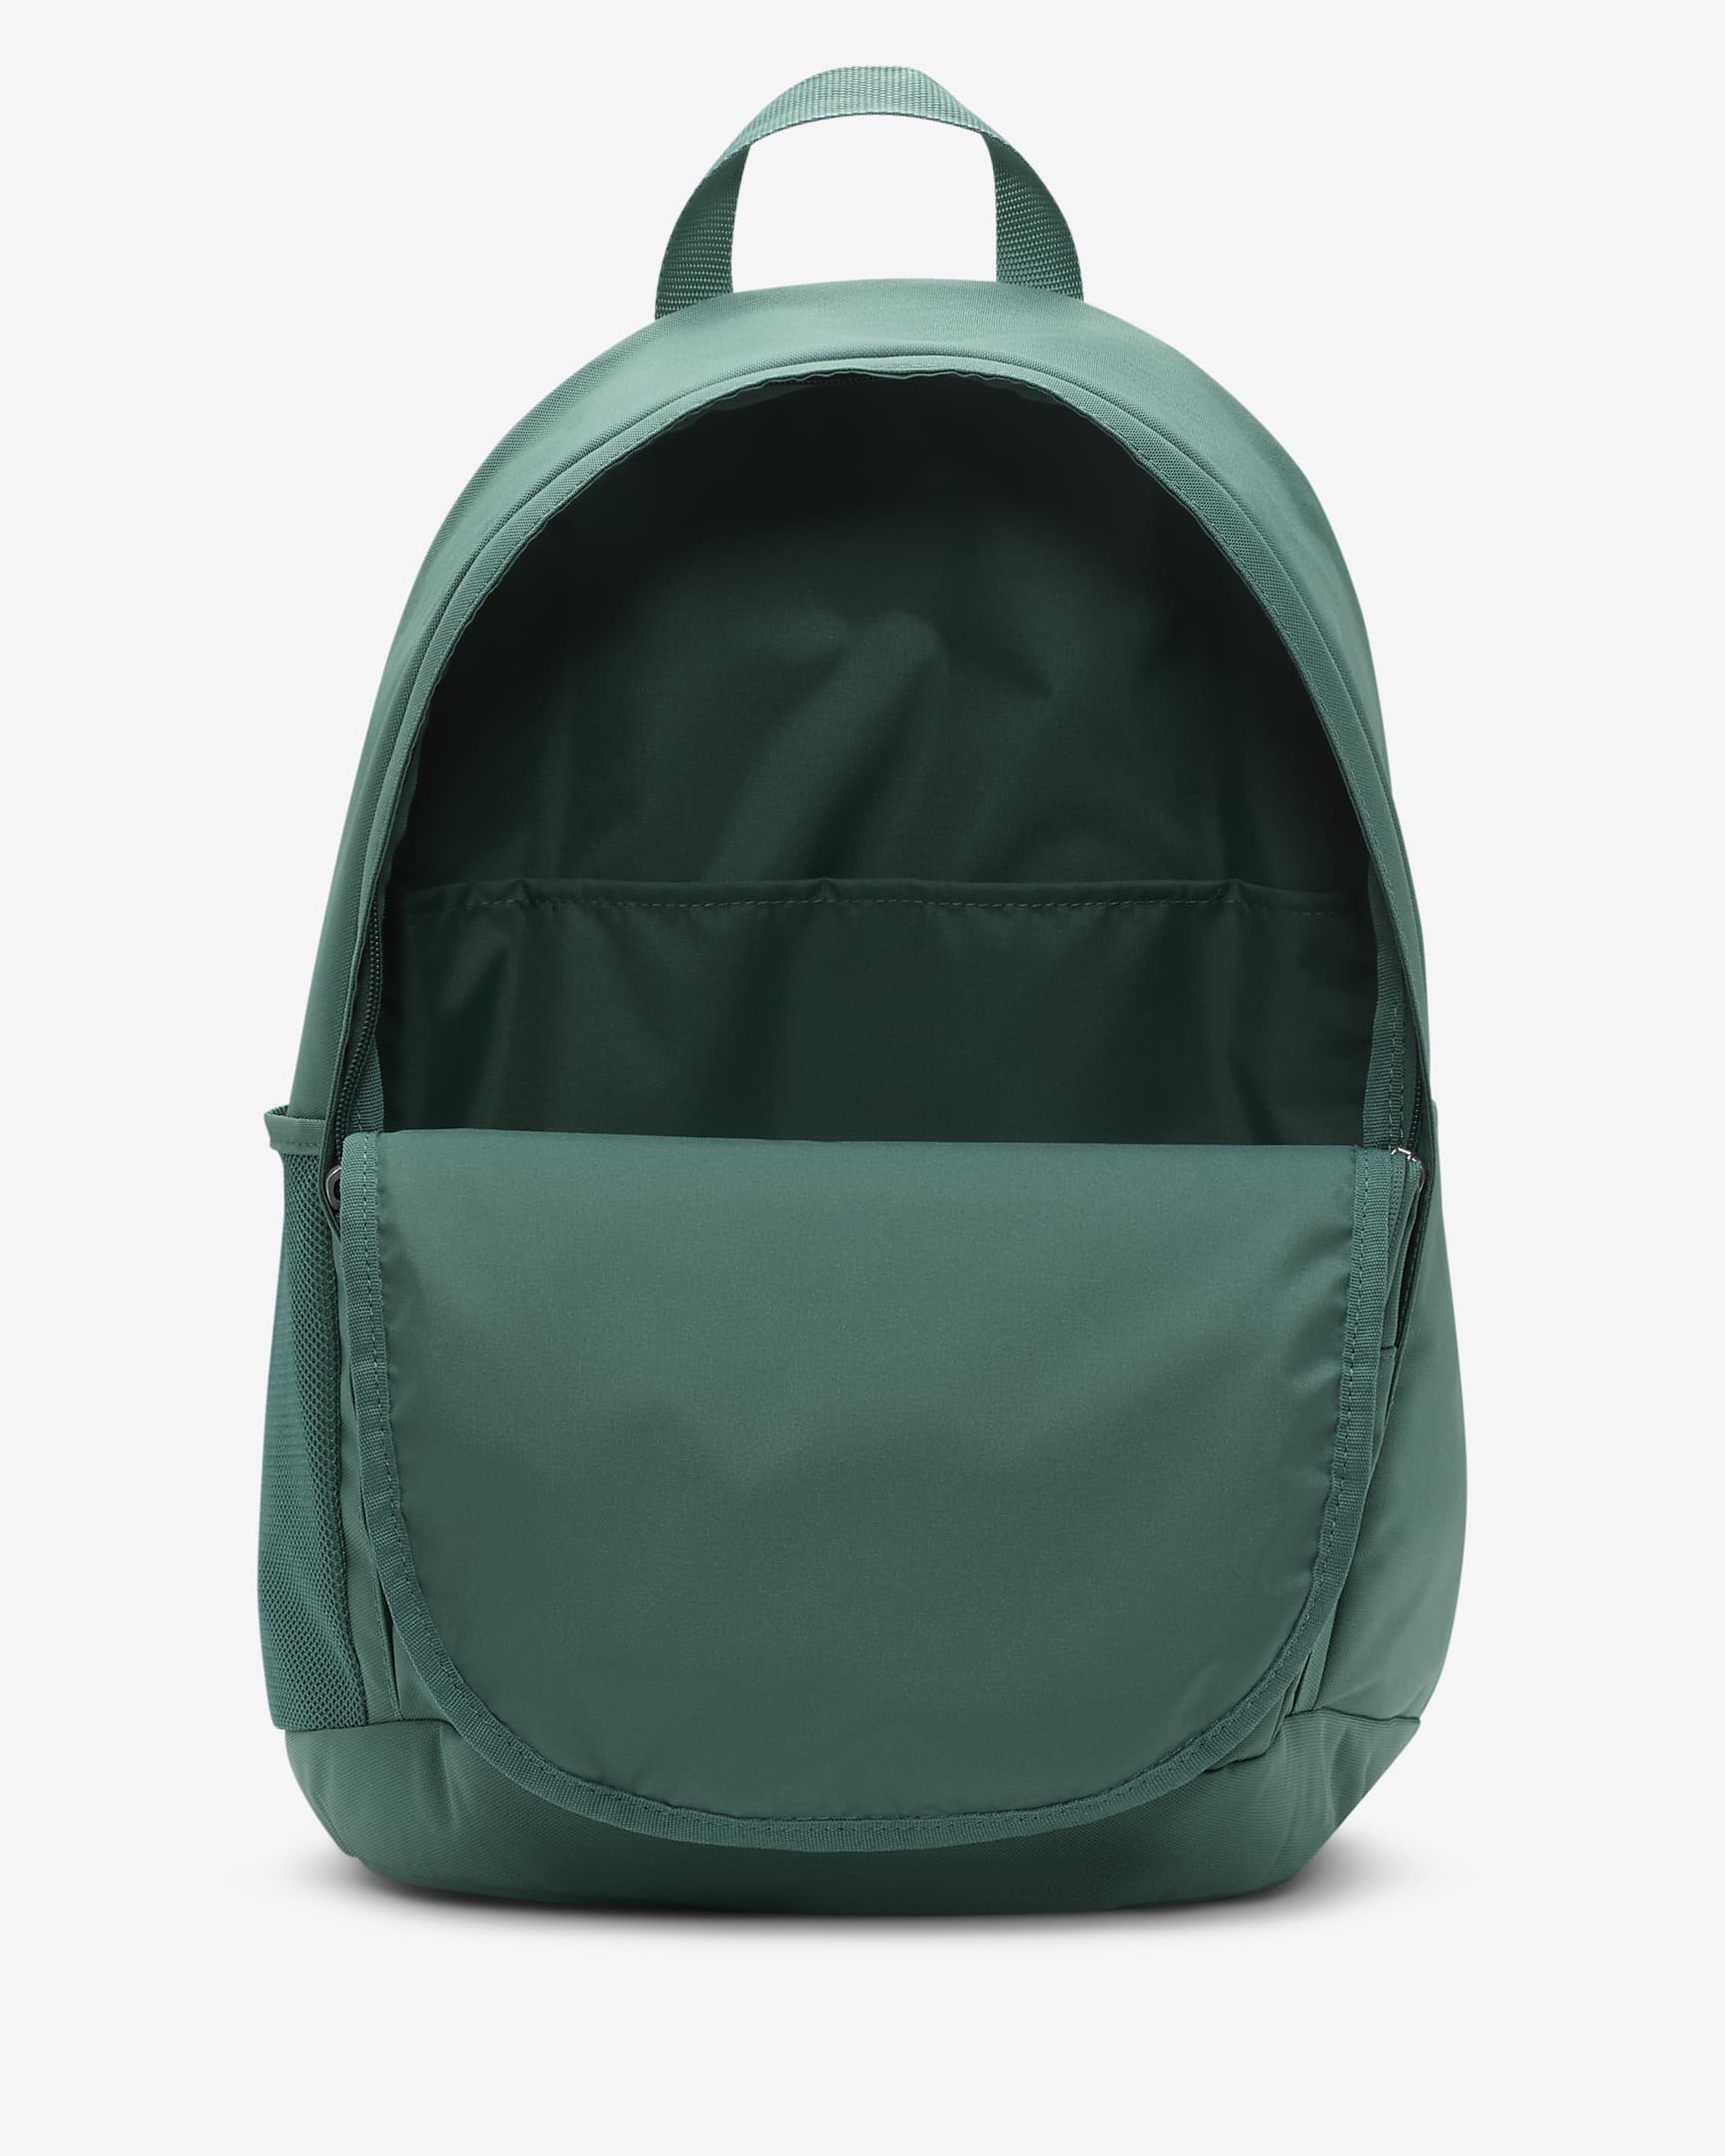 Nike Hayward Backpack (26L) - Bicoastal/Bicoastal/Vintage Green